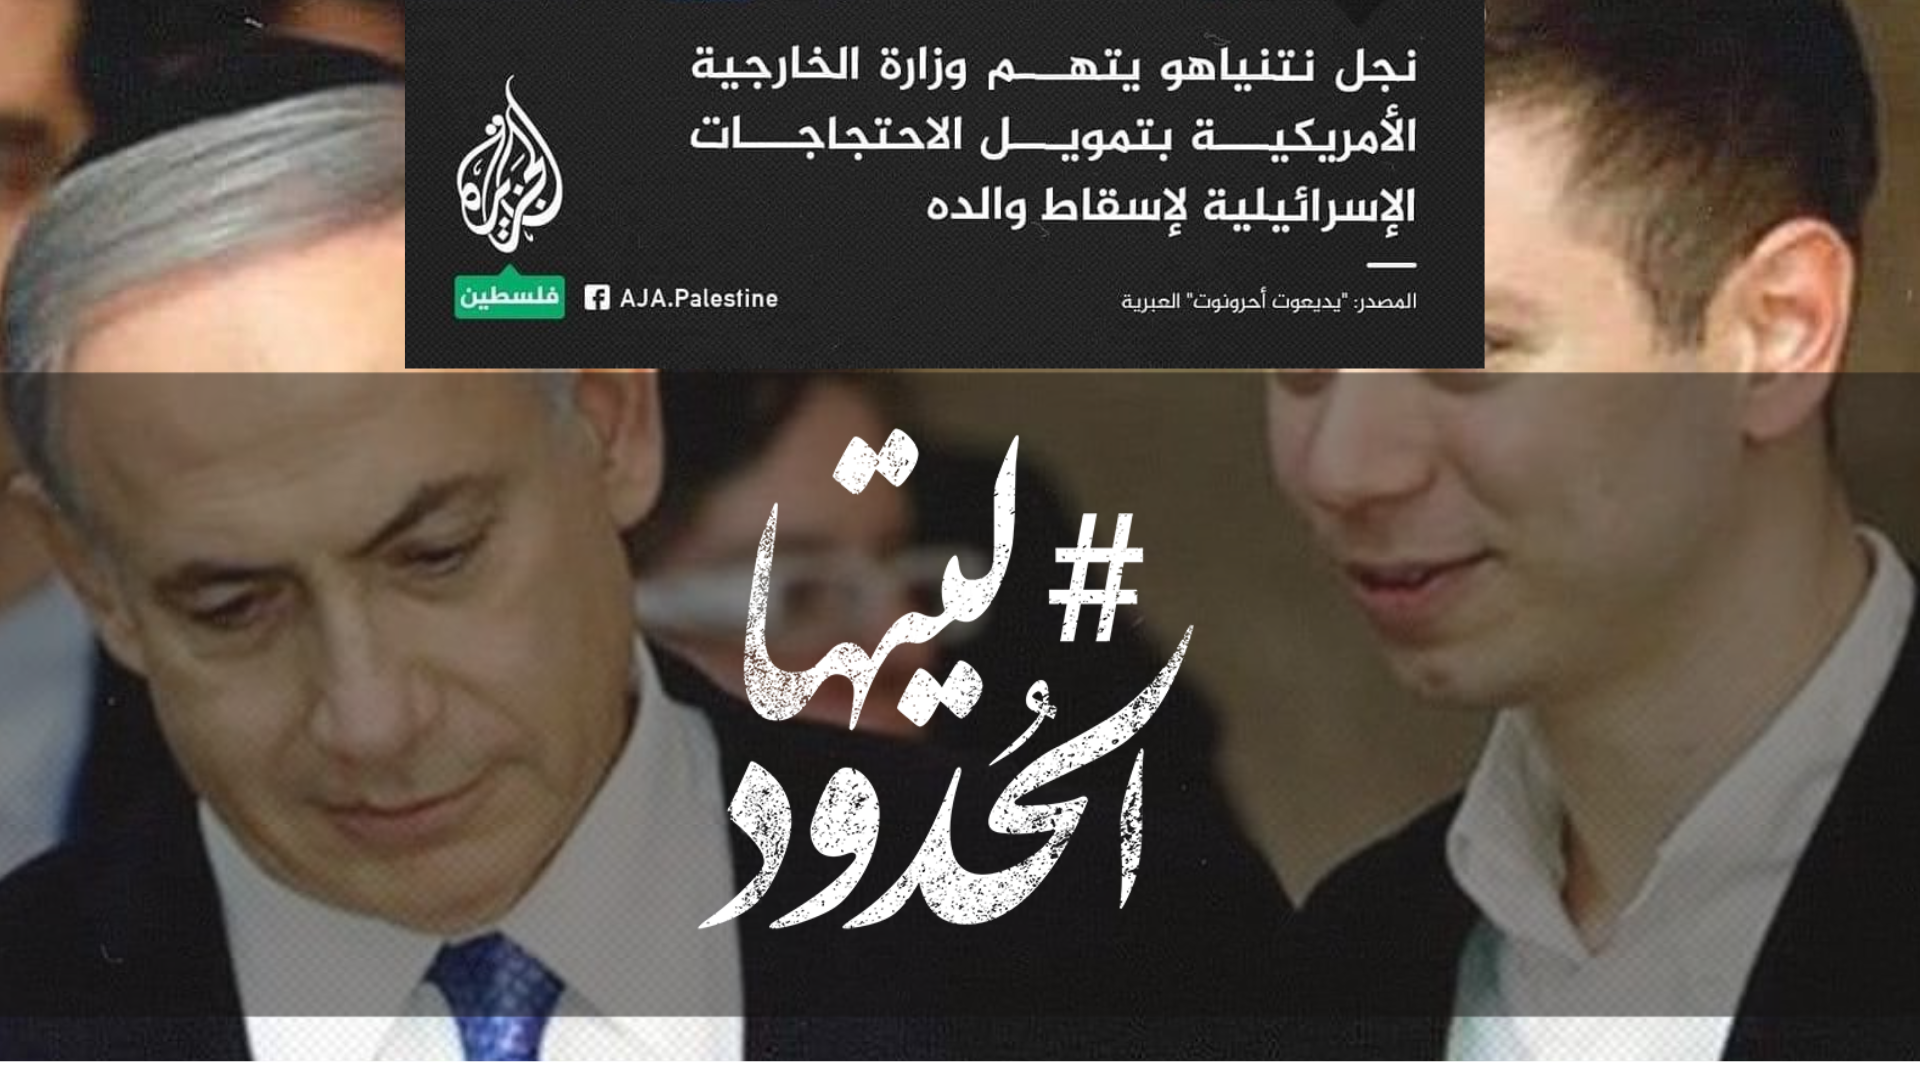 صورة نجل نتنياهو يتهم وزارة الخارجية الأمريكية بتمويل الاحتجاجات الإسرائيلية لإسقاط والده